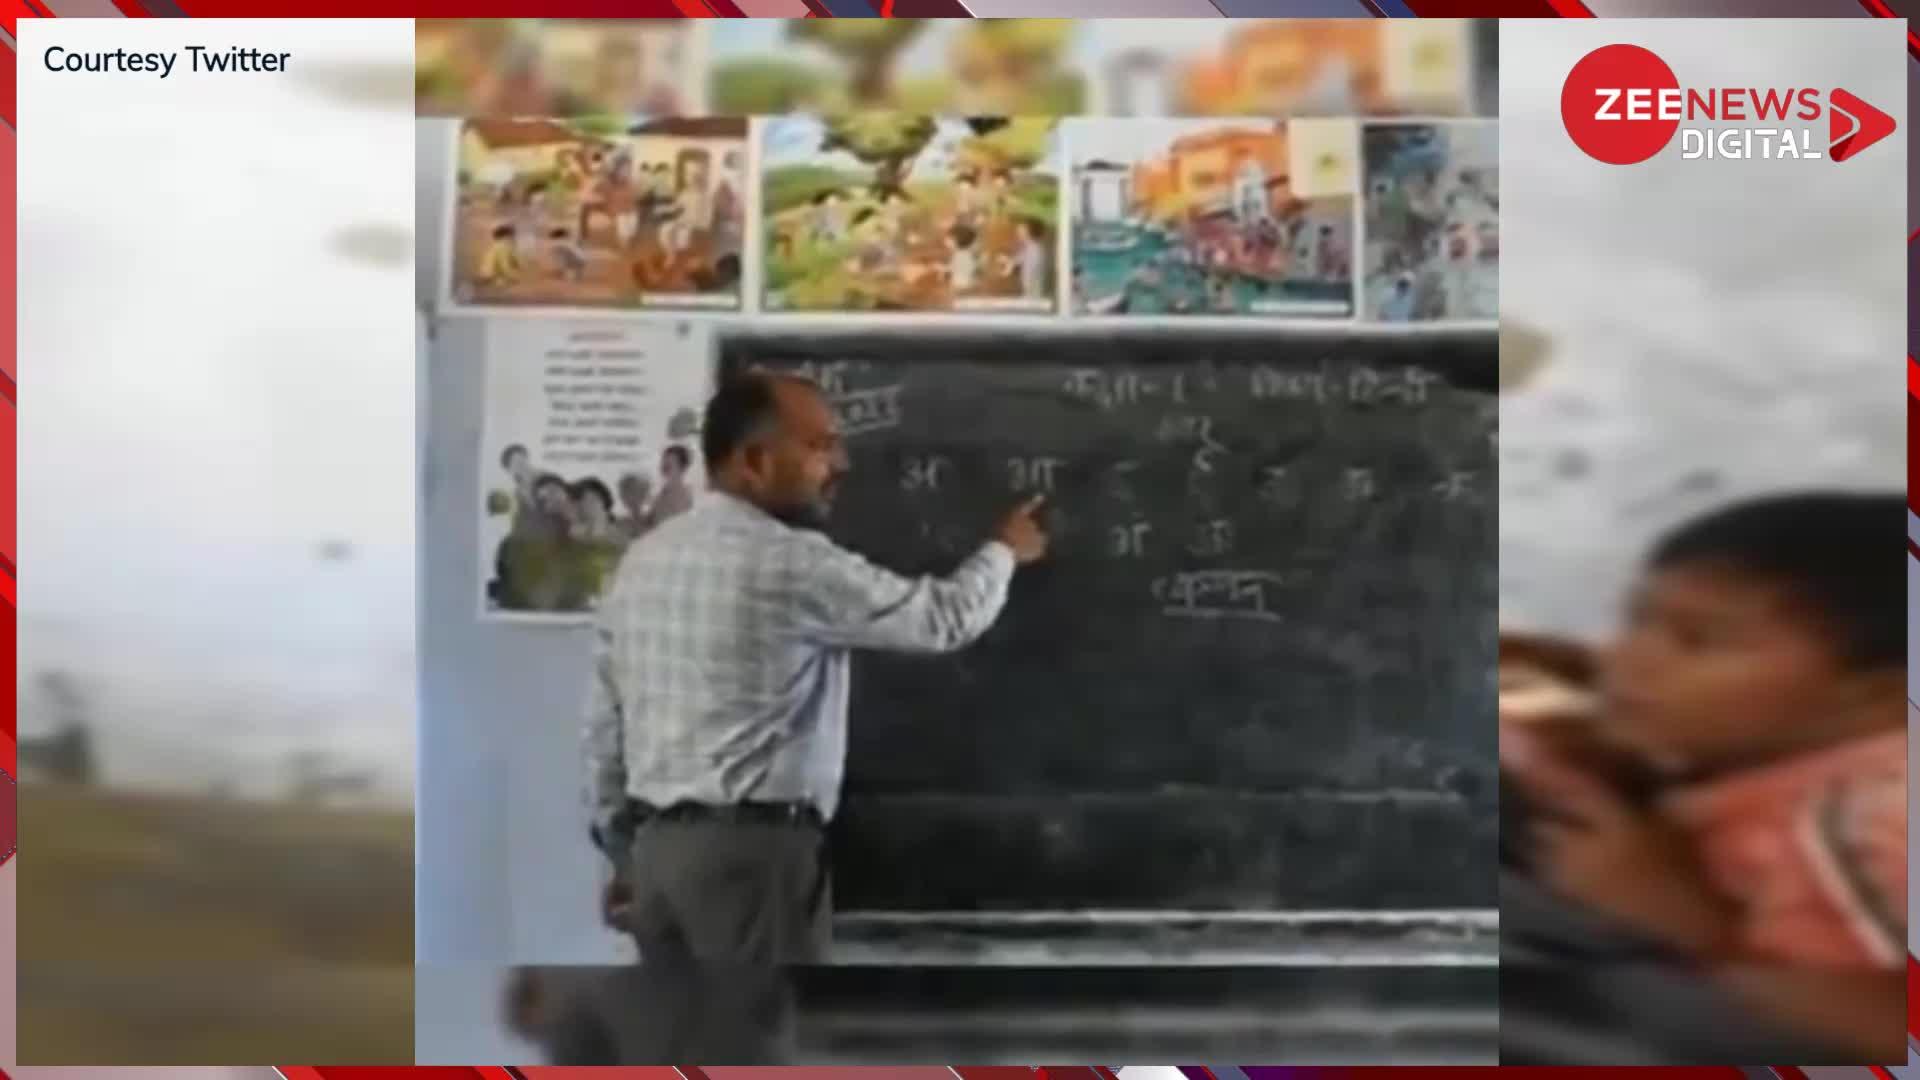 Hindi Teacher Video: टीचर क्लास में गाने लगे ऐसा गाना, सुनकर स्टूडेंट का मूड हुआ फ्रेश; आप भी रह जाएंगे हैरान